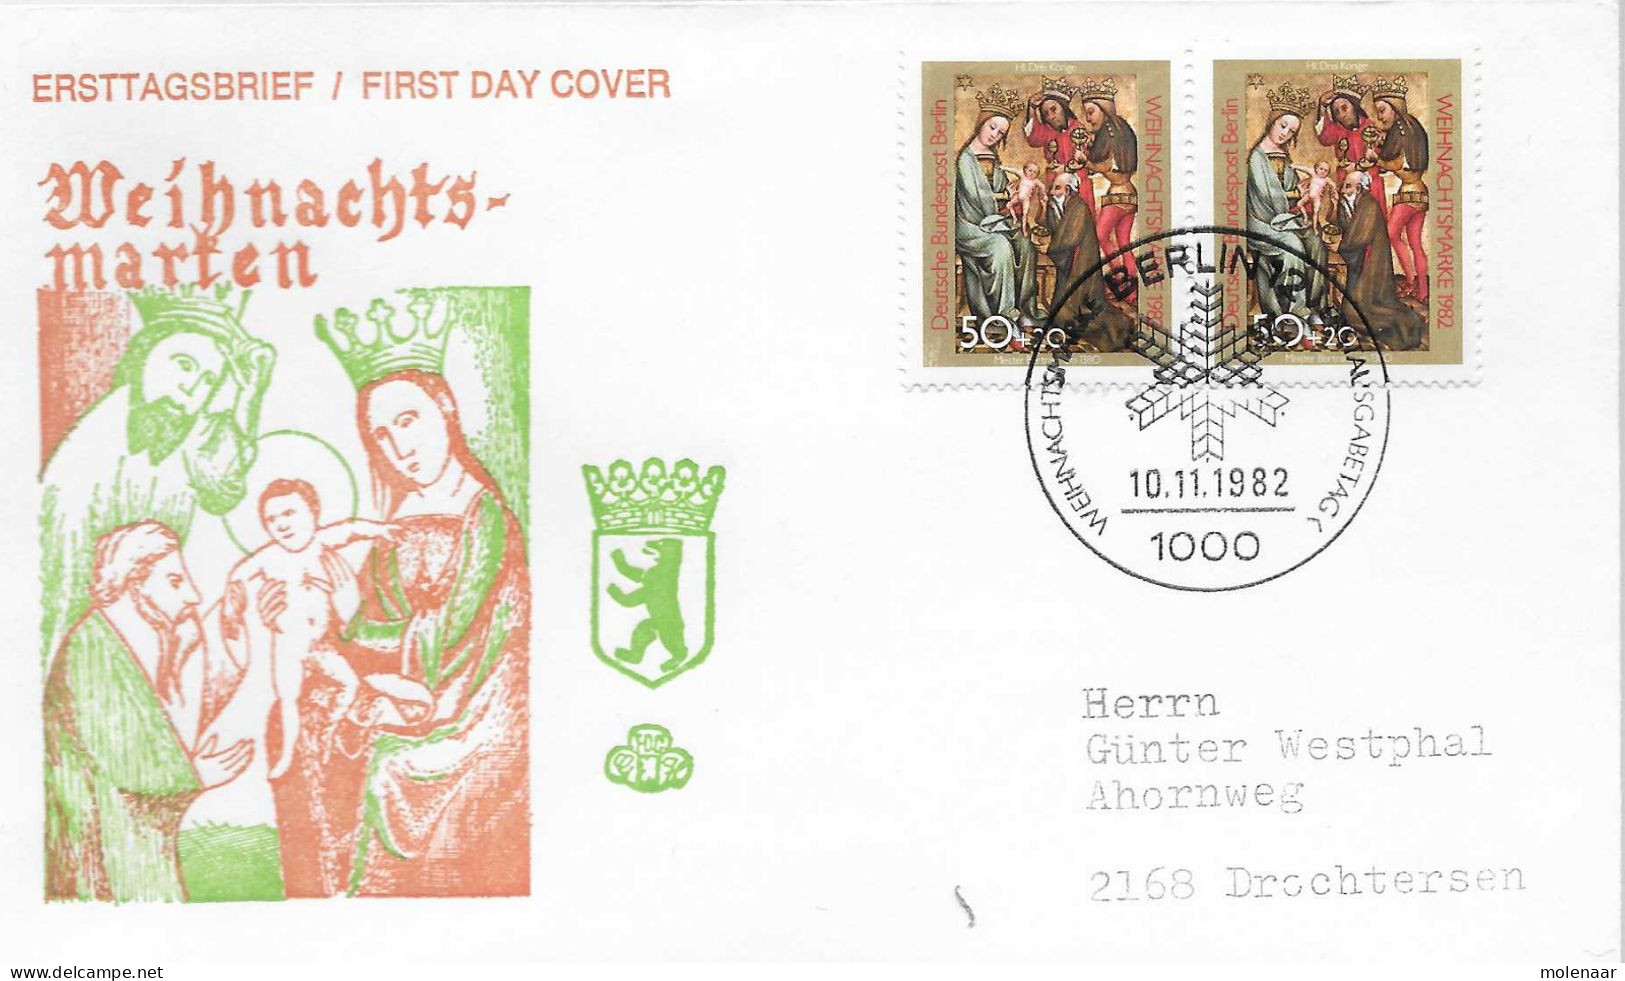 Postzegels > Europa > Duitsland > Berlijn > 1980-1990> Brief Met No. 698 2x (17184) - Covers & Documents